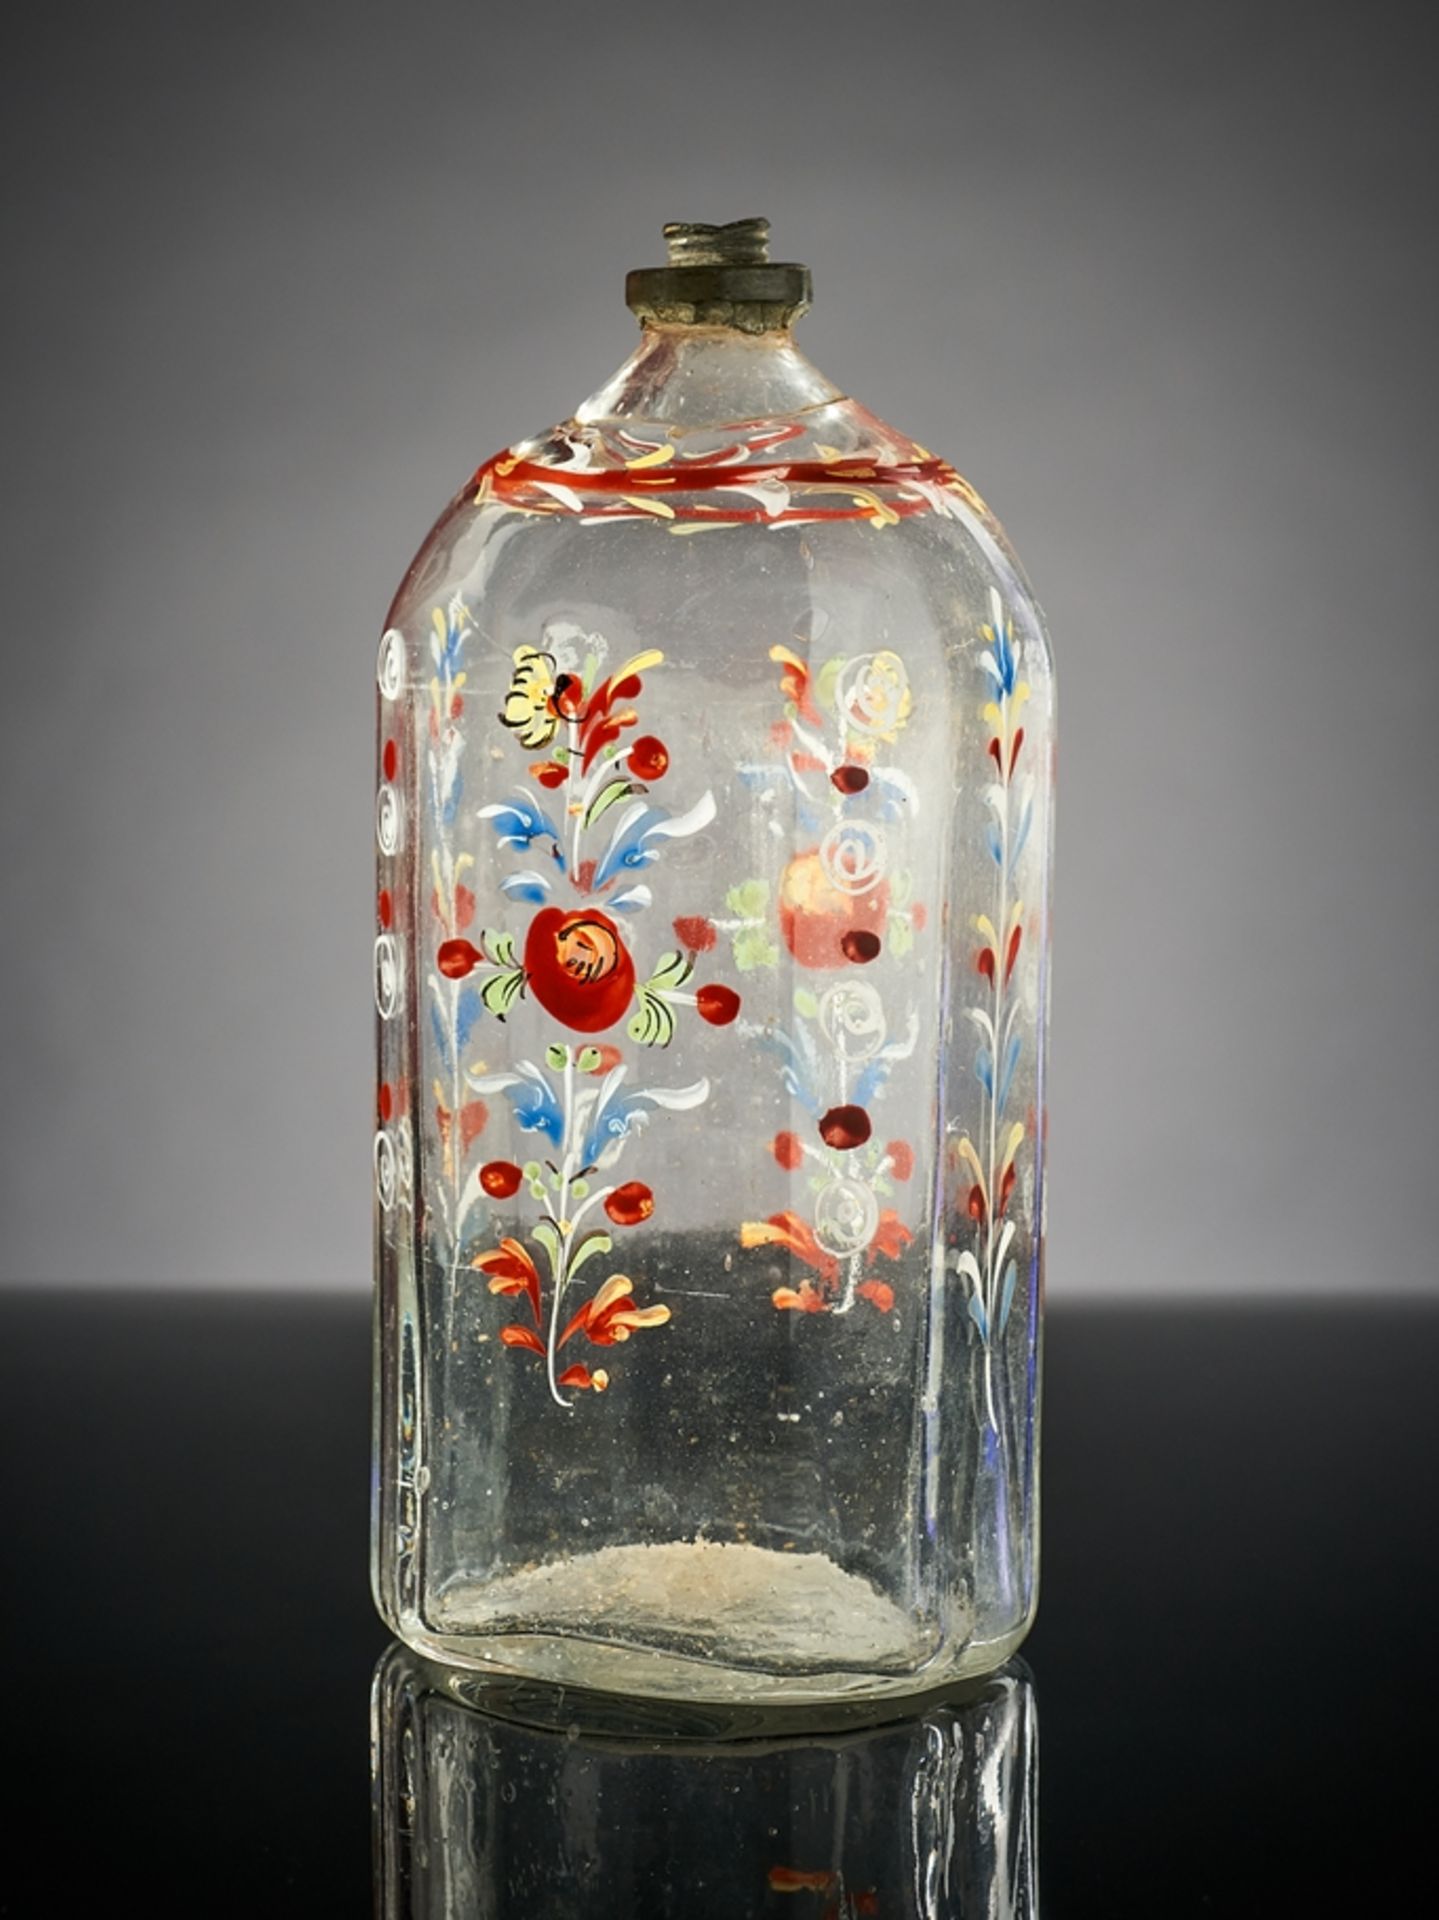 Schnapsflasche. Emaille-Bemalung mit Blüten und Spiralen. Zinnrand. Freudenthal, 1. Drittel 19. Jh.